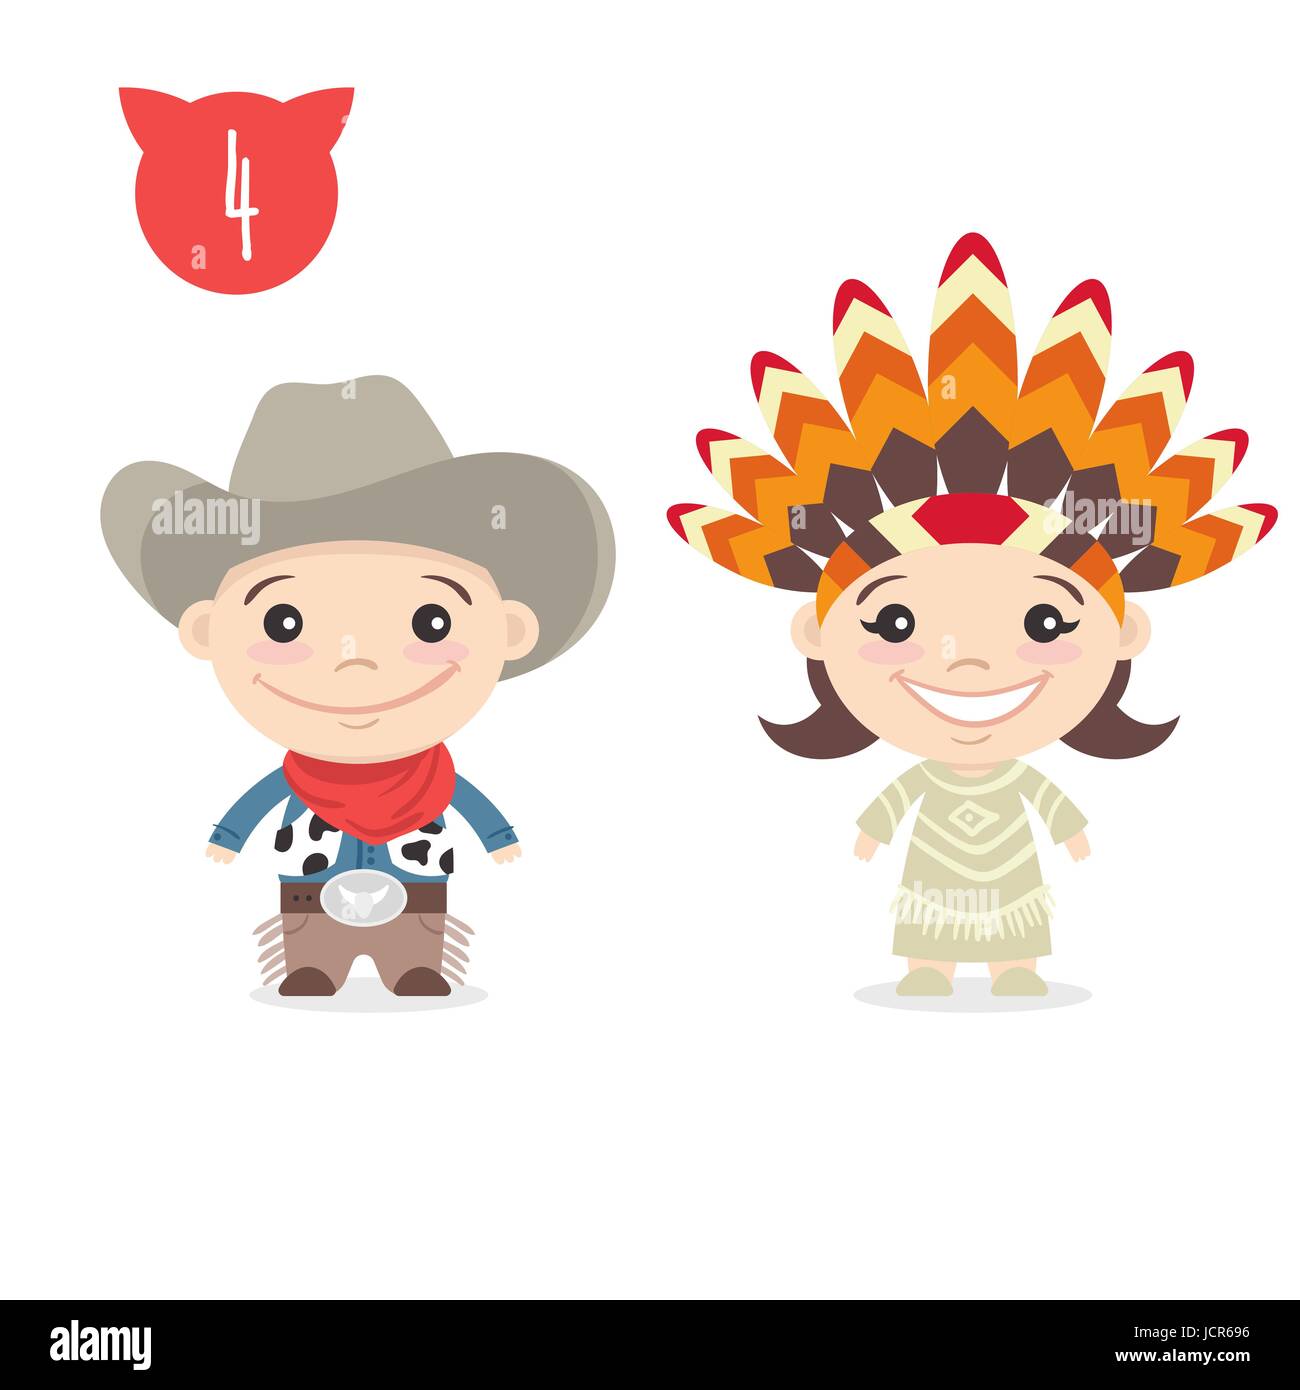 Illustrazione vettoriale delle due felice simpatici personaggi per bambini. Ragazzo in costume da cowboy e una ragazza in Indian Native American costume. Illustrazione Vettoriale